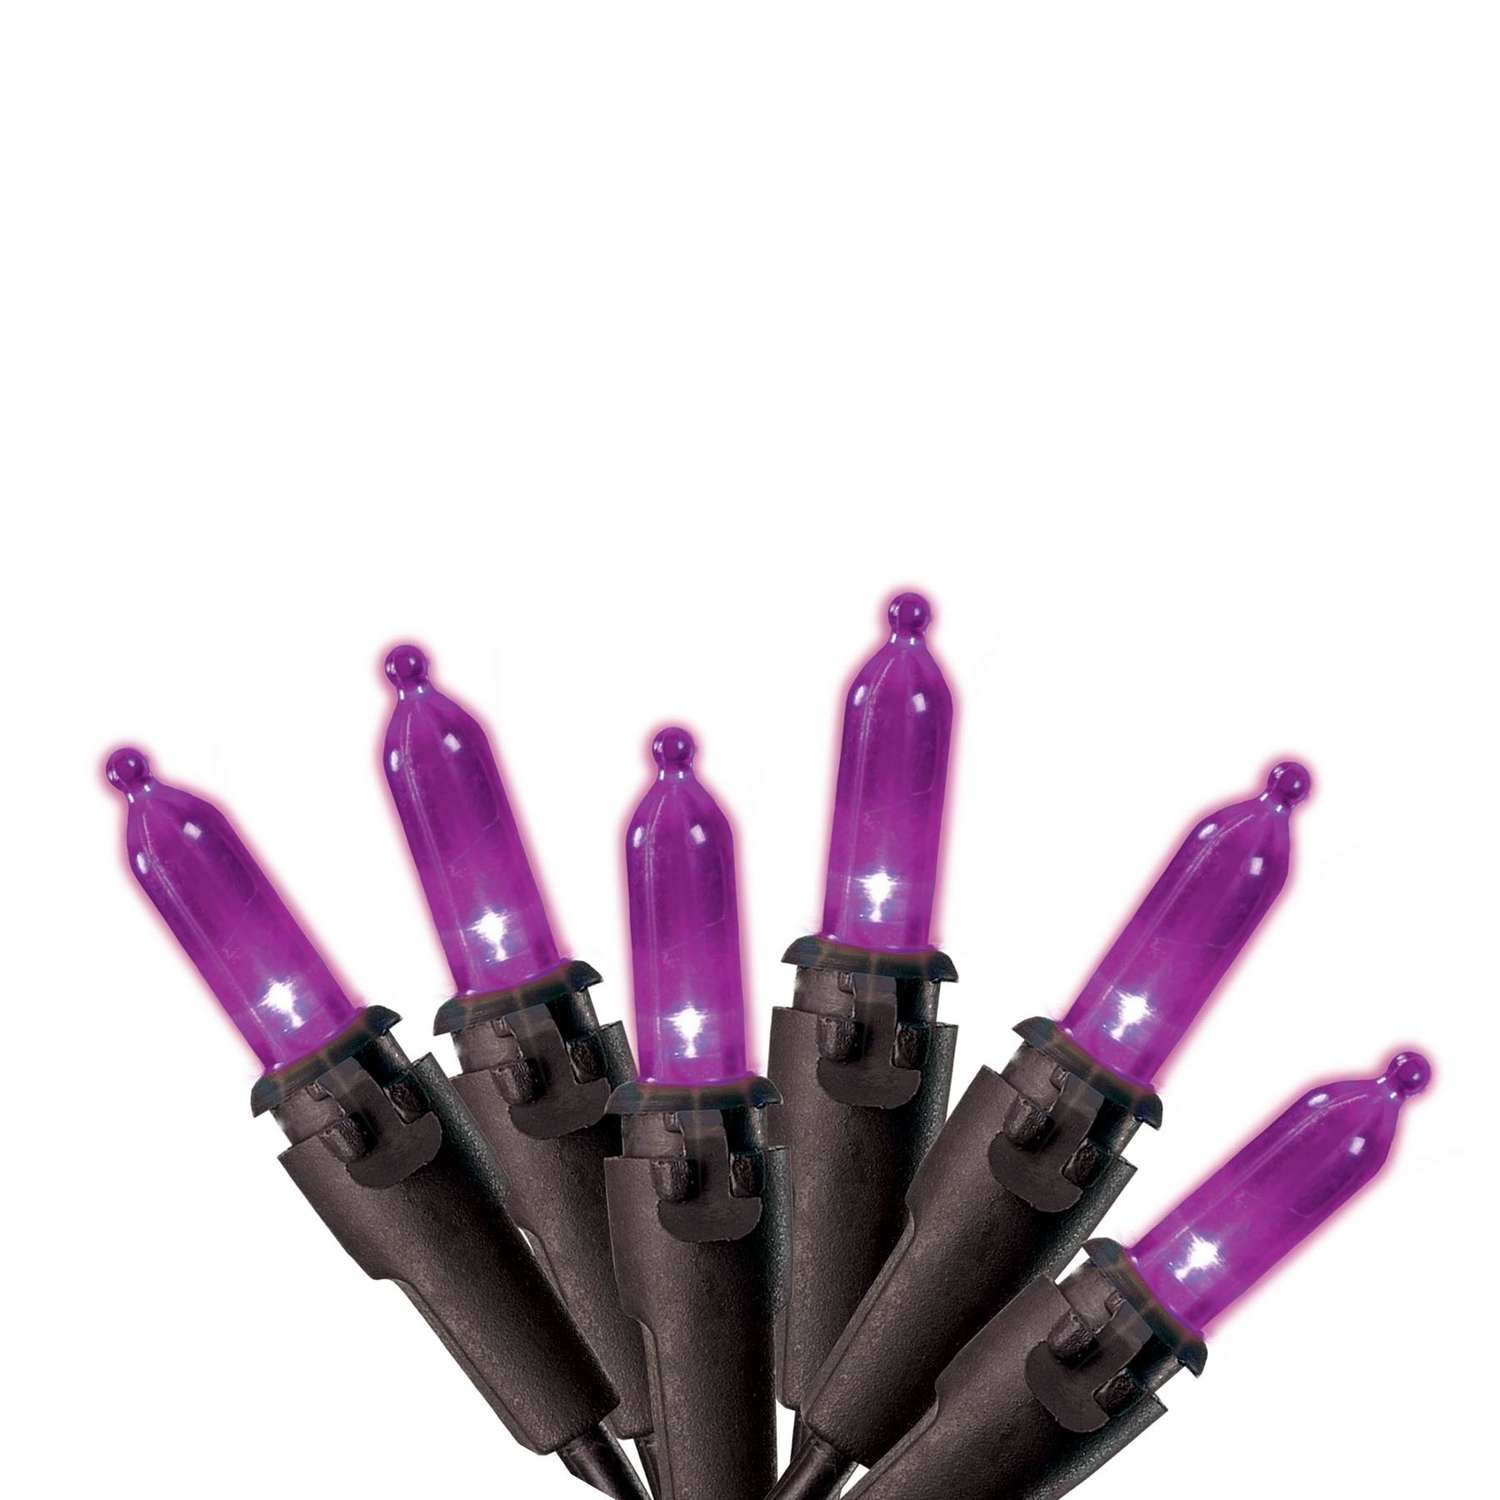 Scissors Purple - Wisc-Online OER